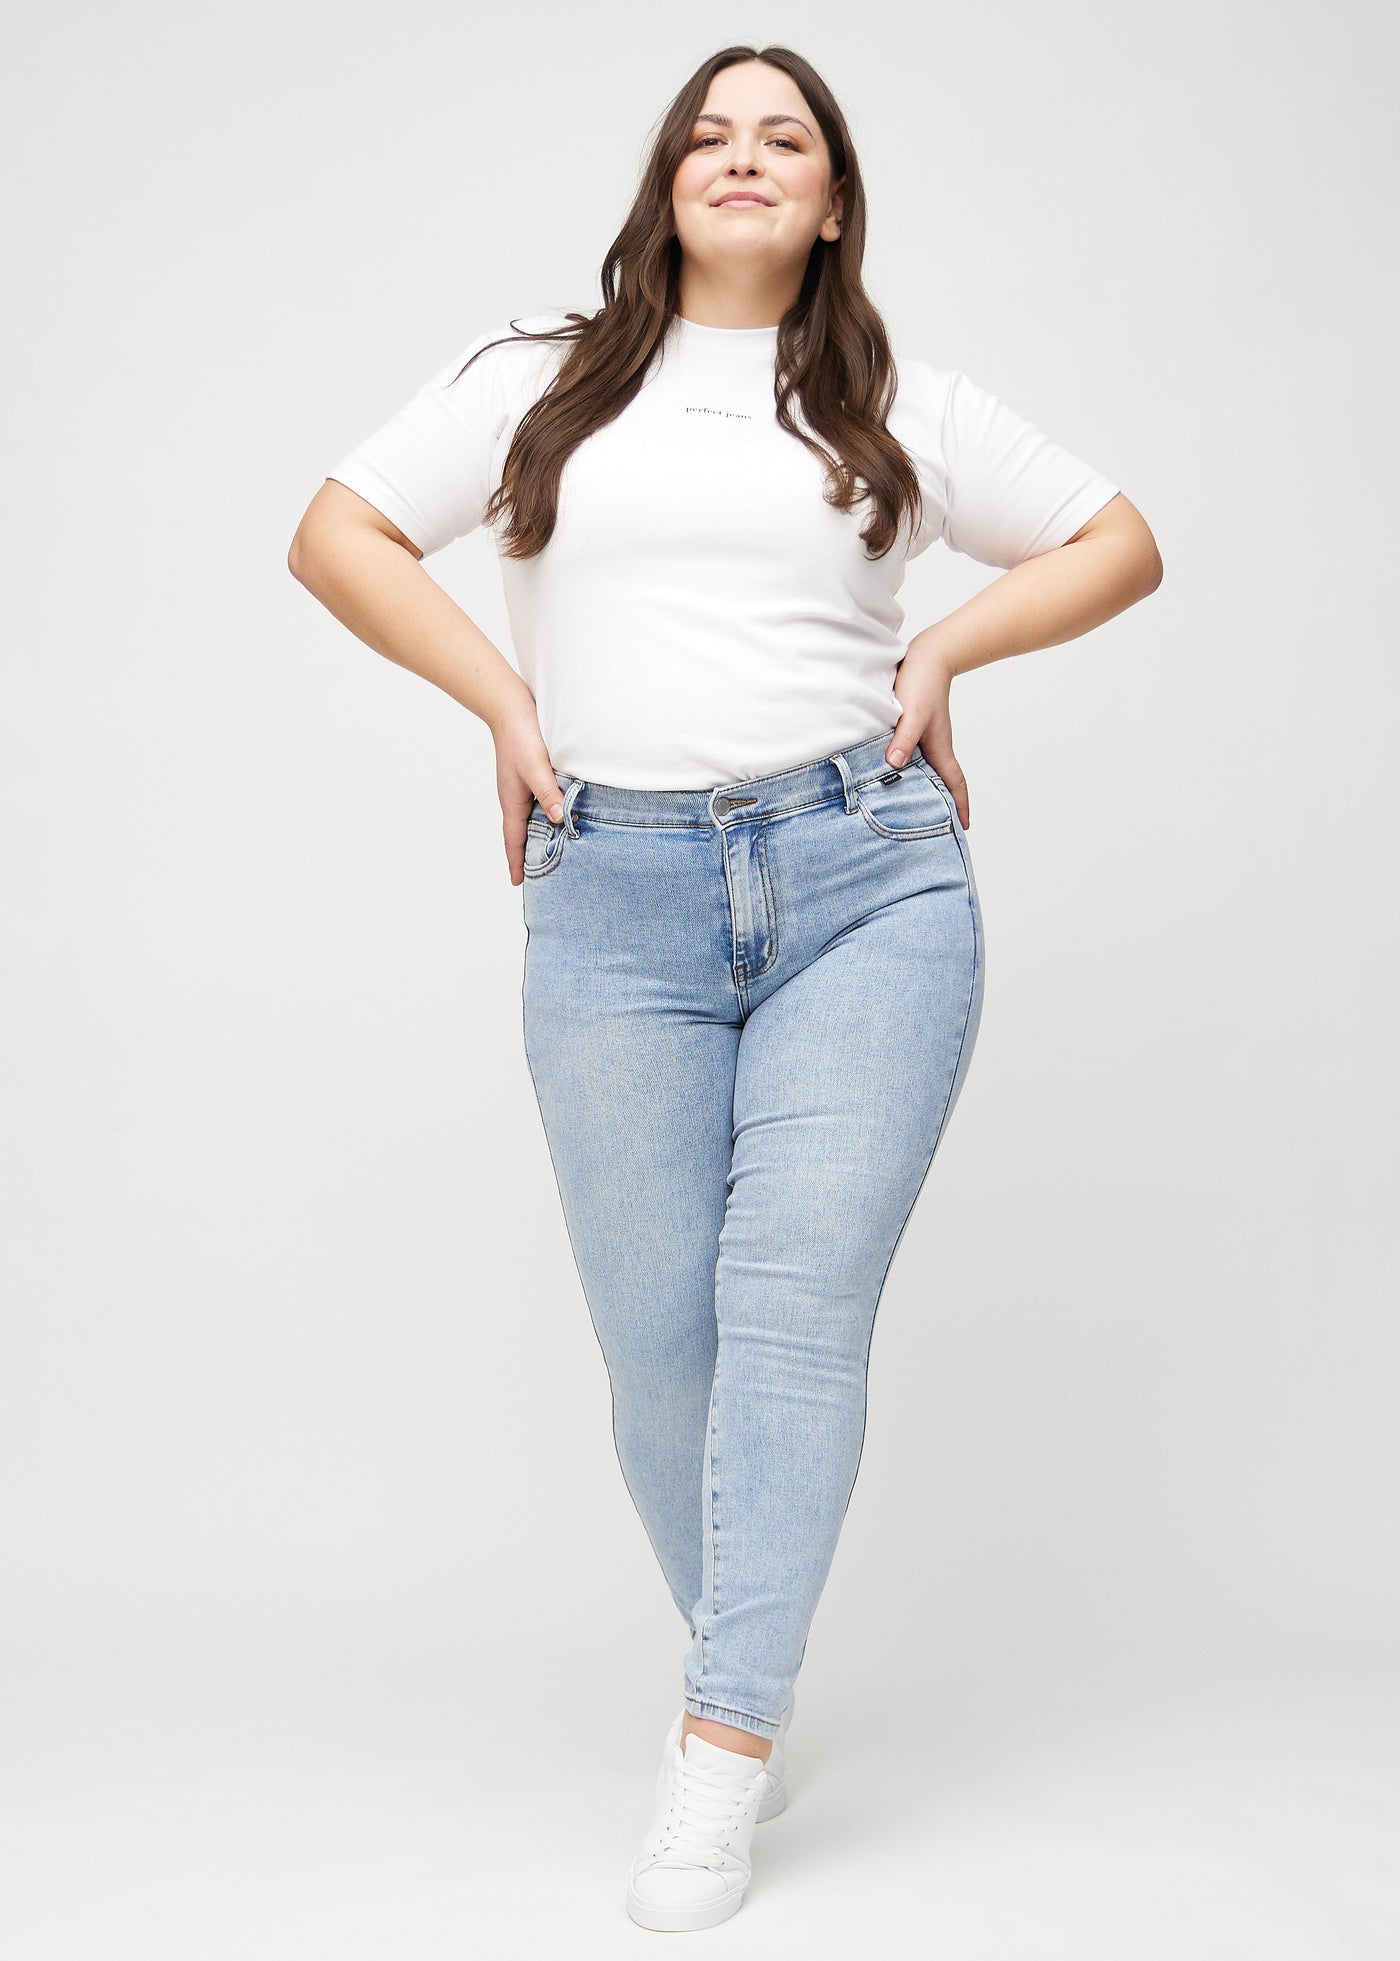 Fuldt billede af en plus-size model i lys denim skinny jeans.